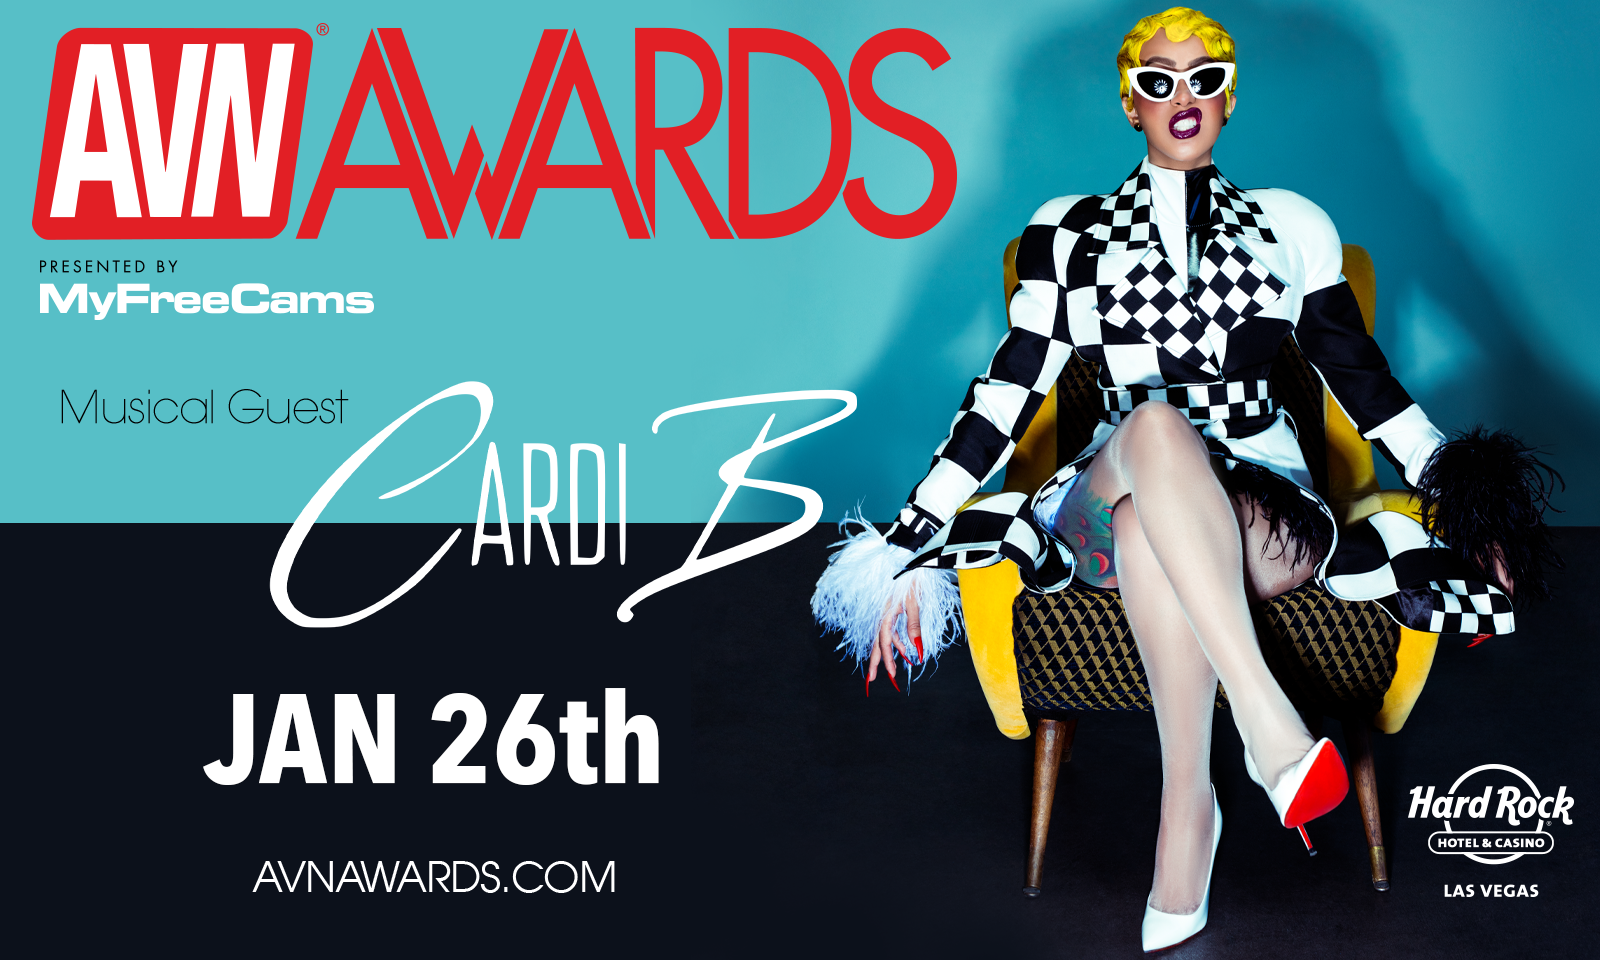 Cardi B Named 2019 AVN Awards Musical Guest